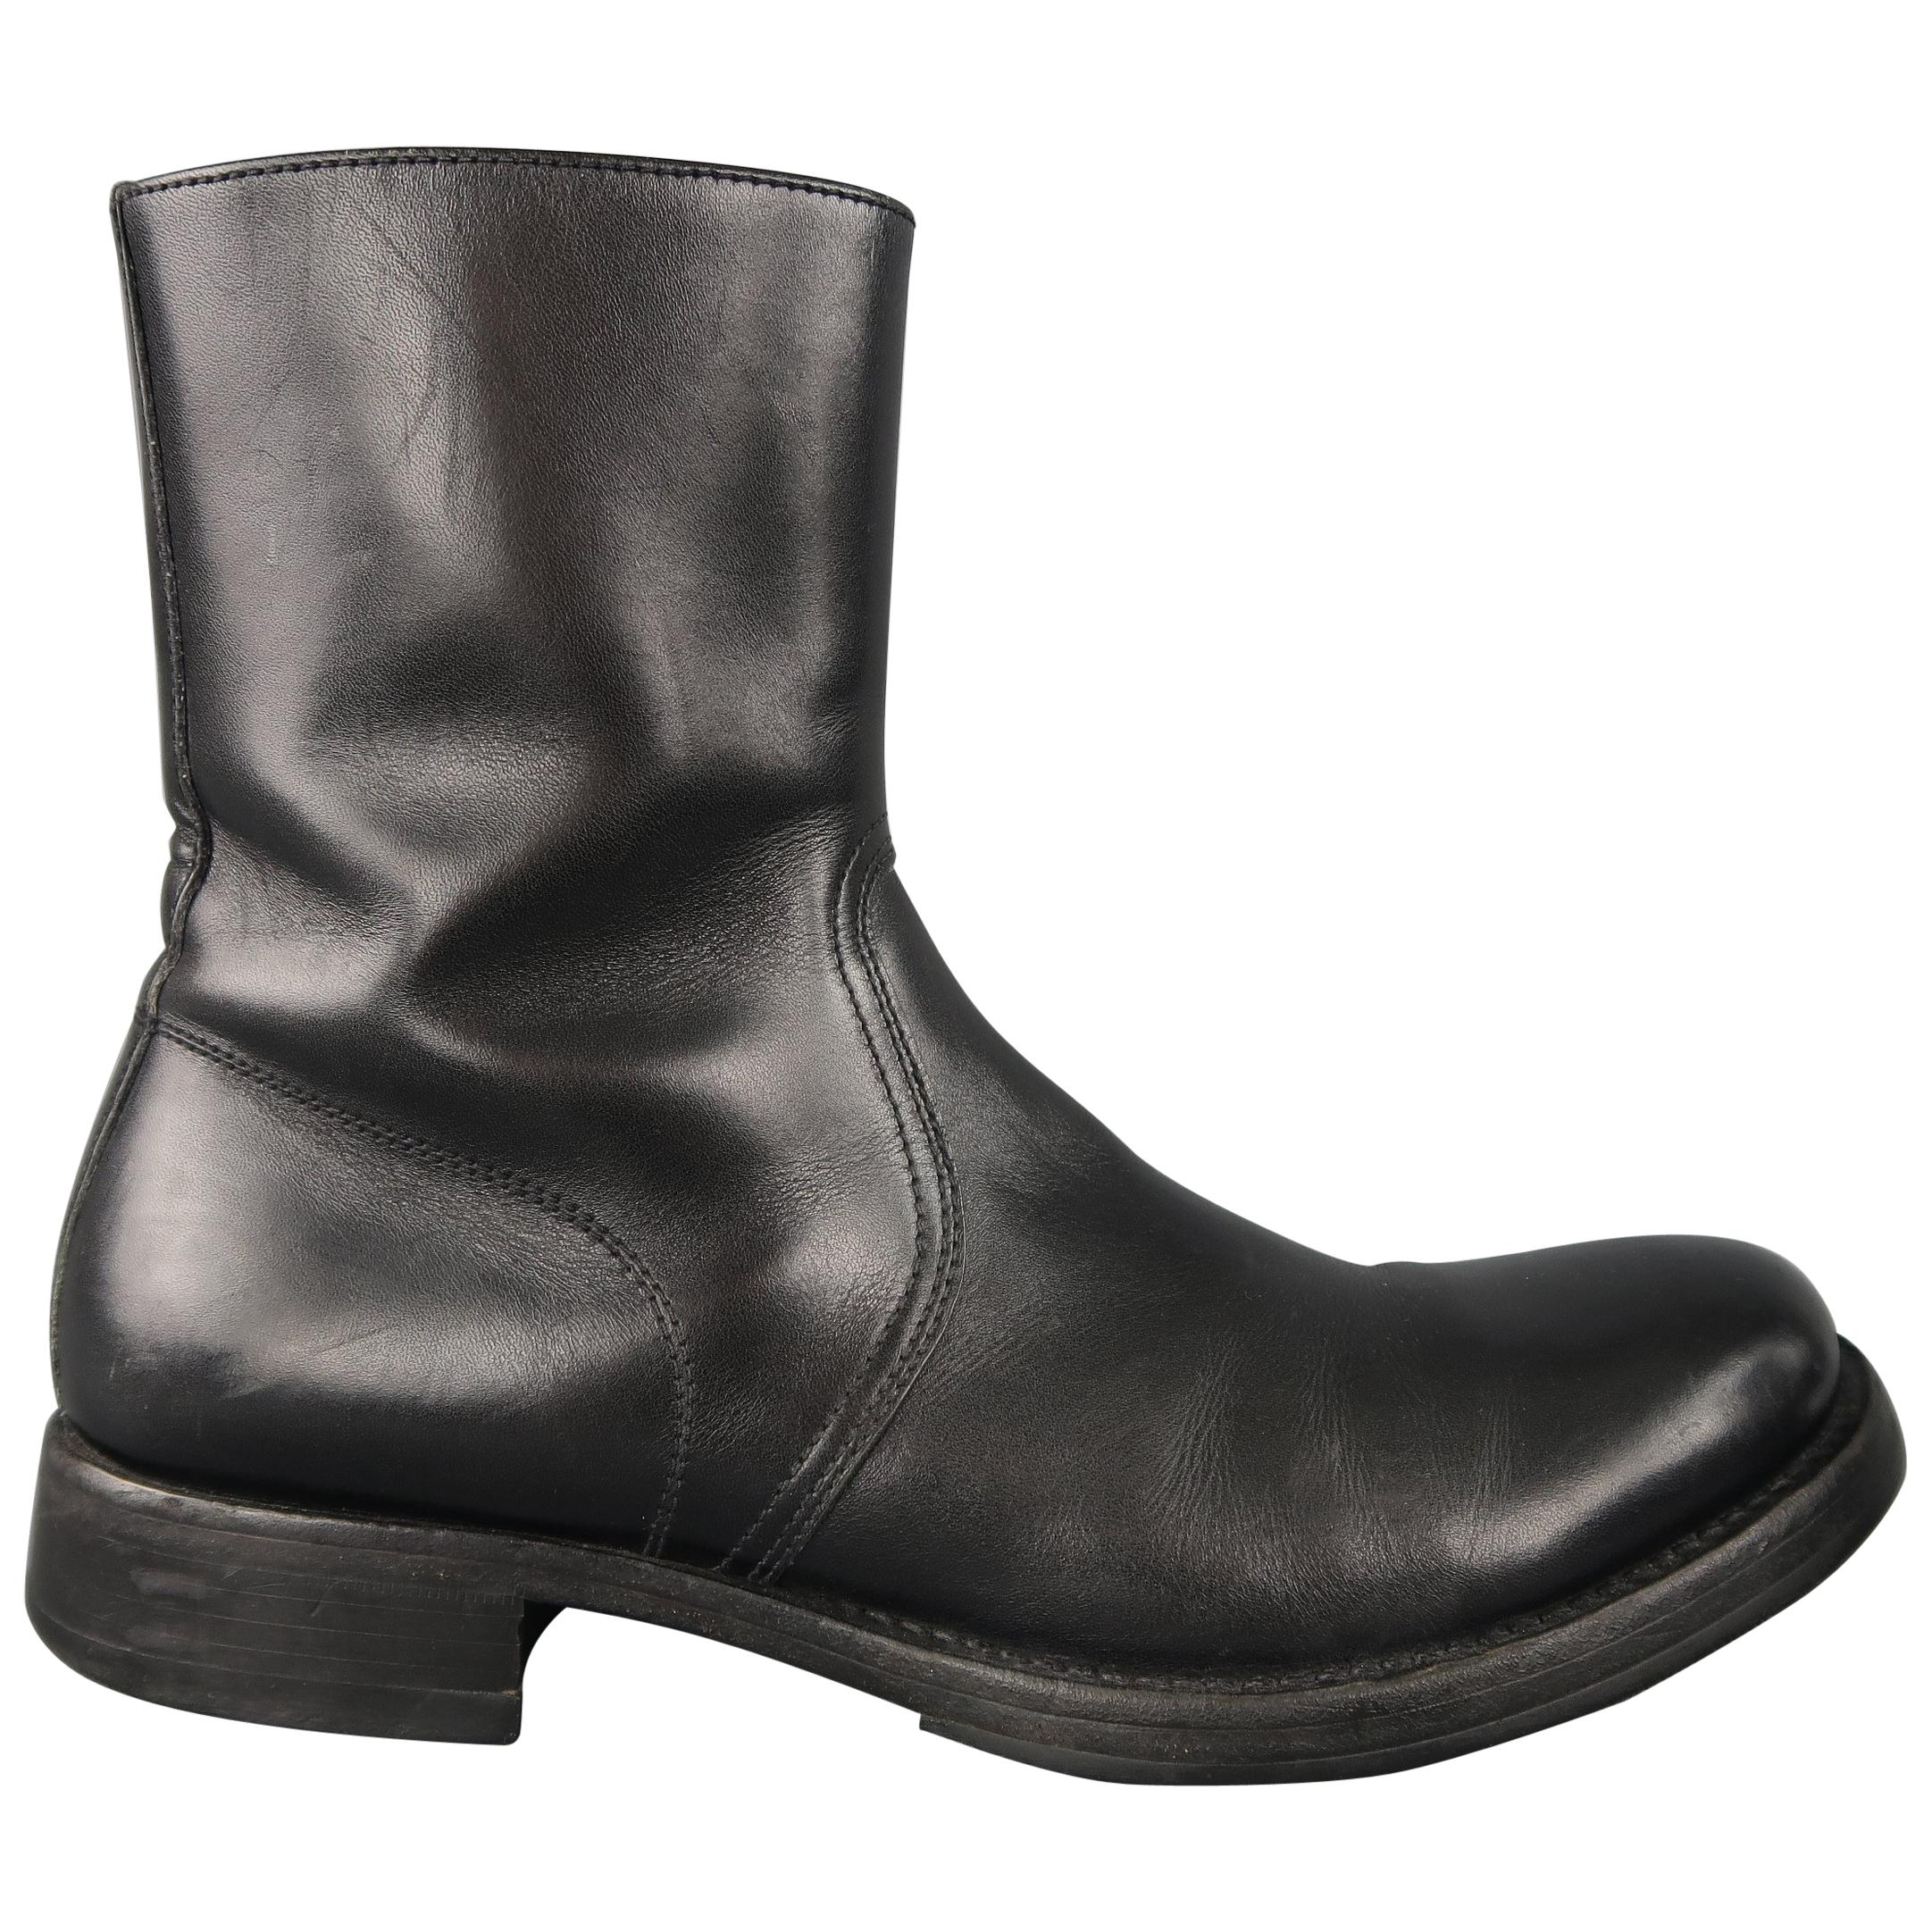 Miu Miu Black Leather Men's Ankle Boots Shoes 